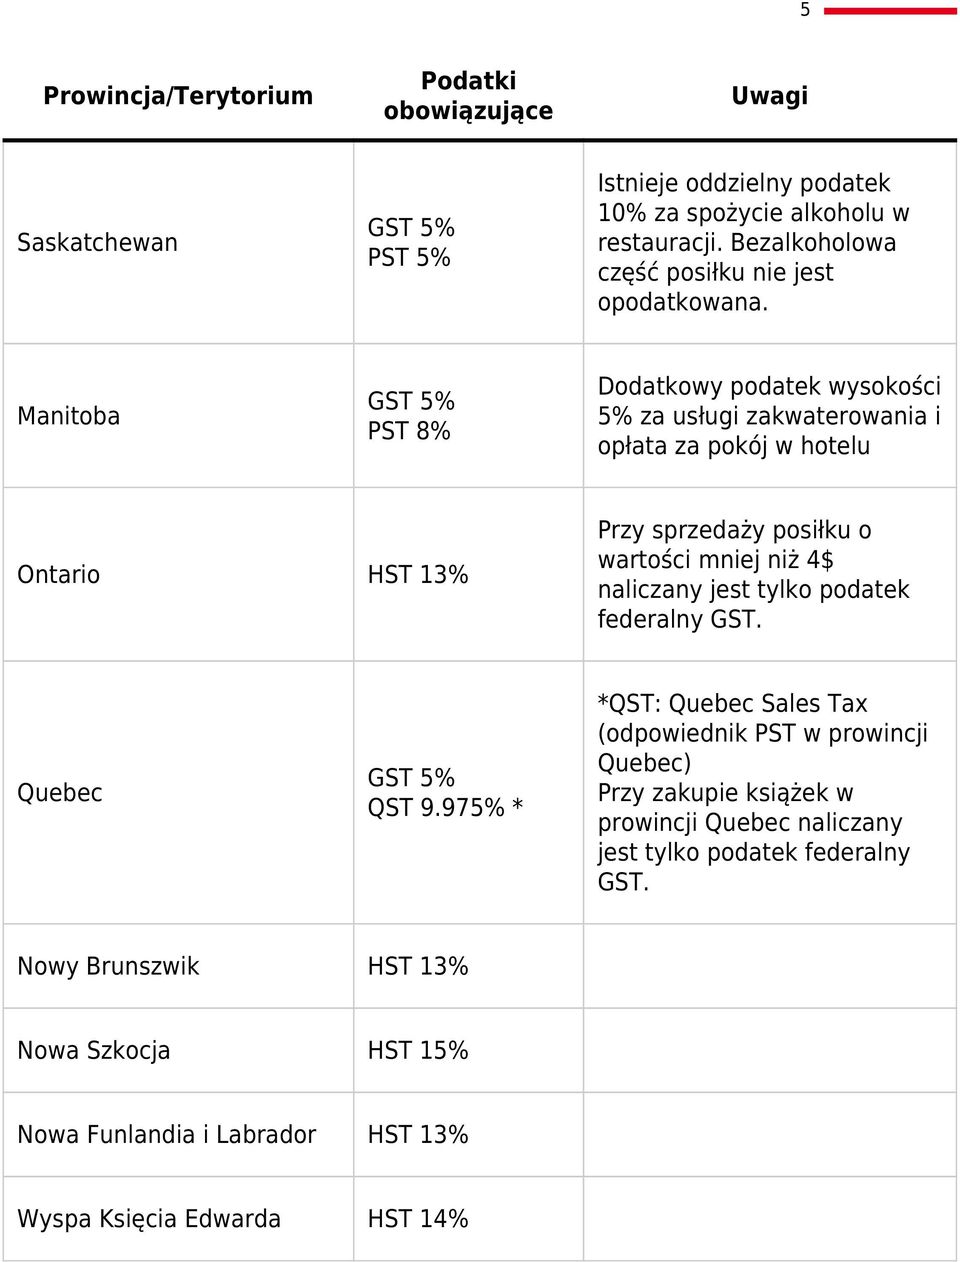 Manitoba PST 8% Dodatkowy podatek wysokości 5% za usługi zakwaterowania i opłata za pokój w hotelu Ontario HST 13% Przy sprzedaży posiłku o wartości mniej niż 4$